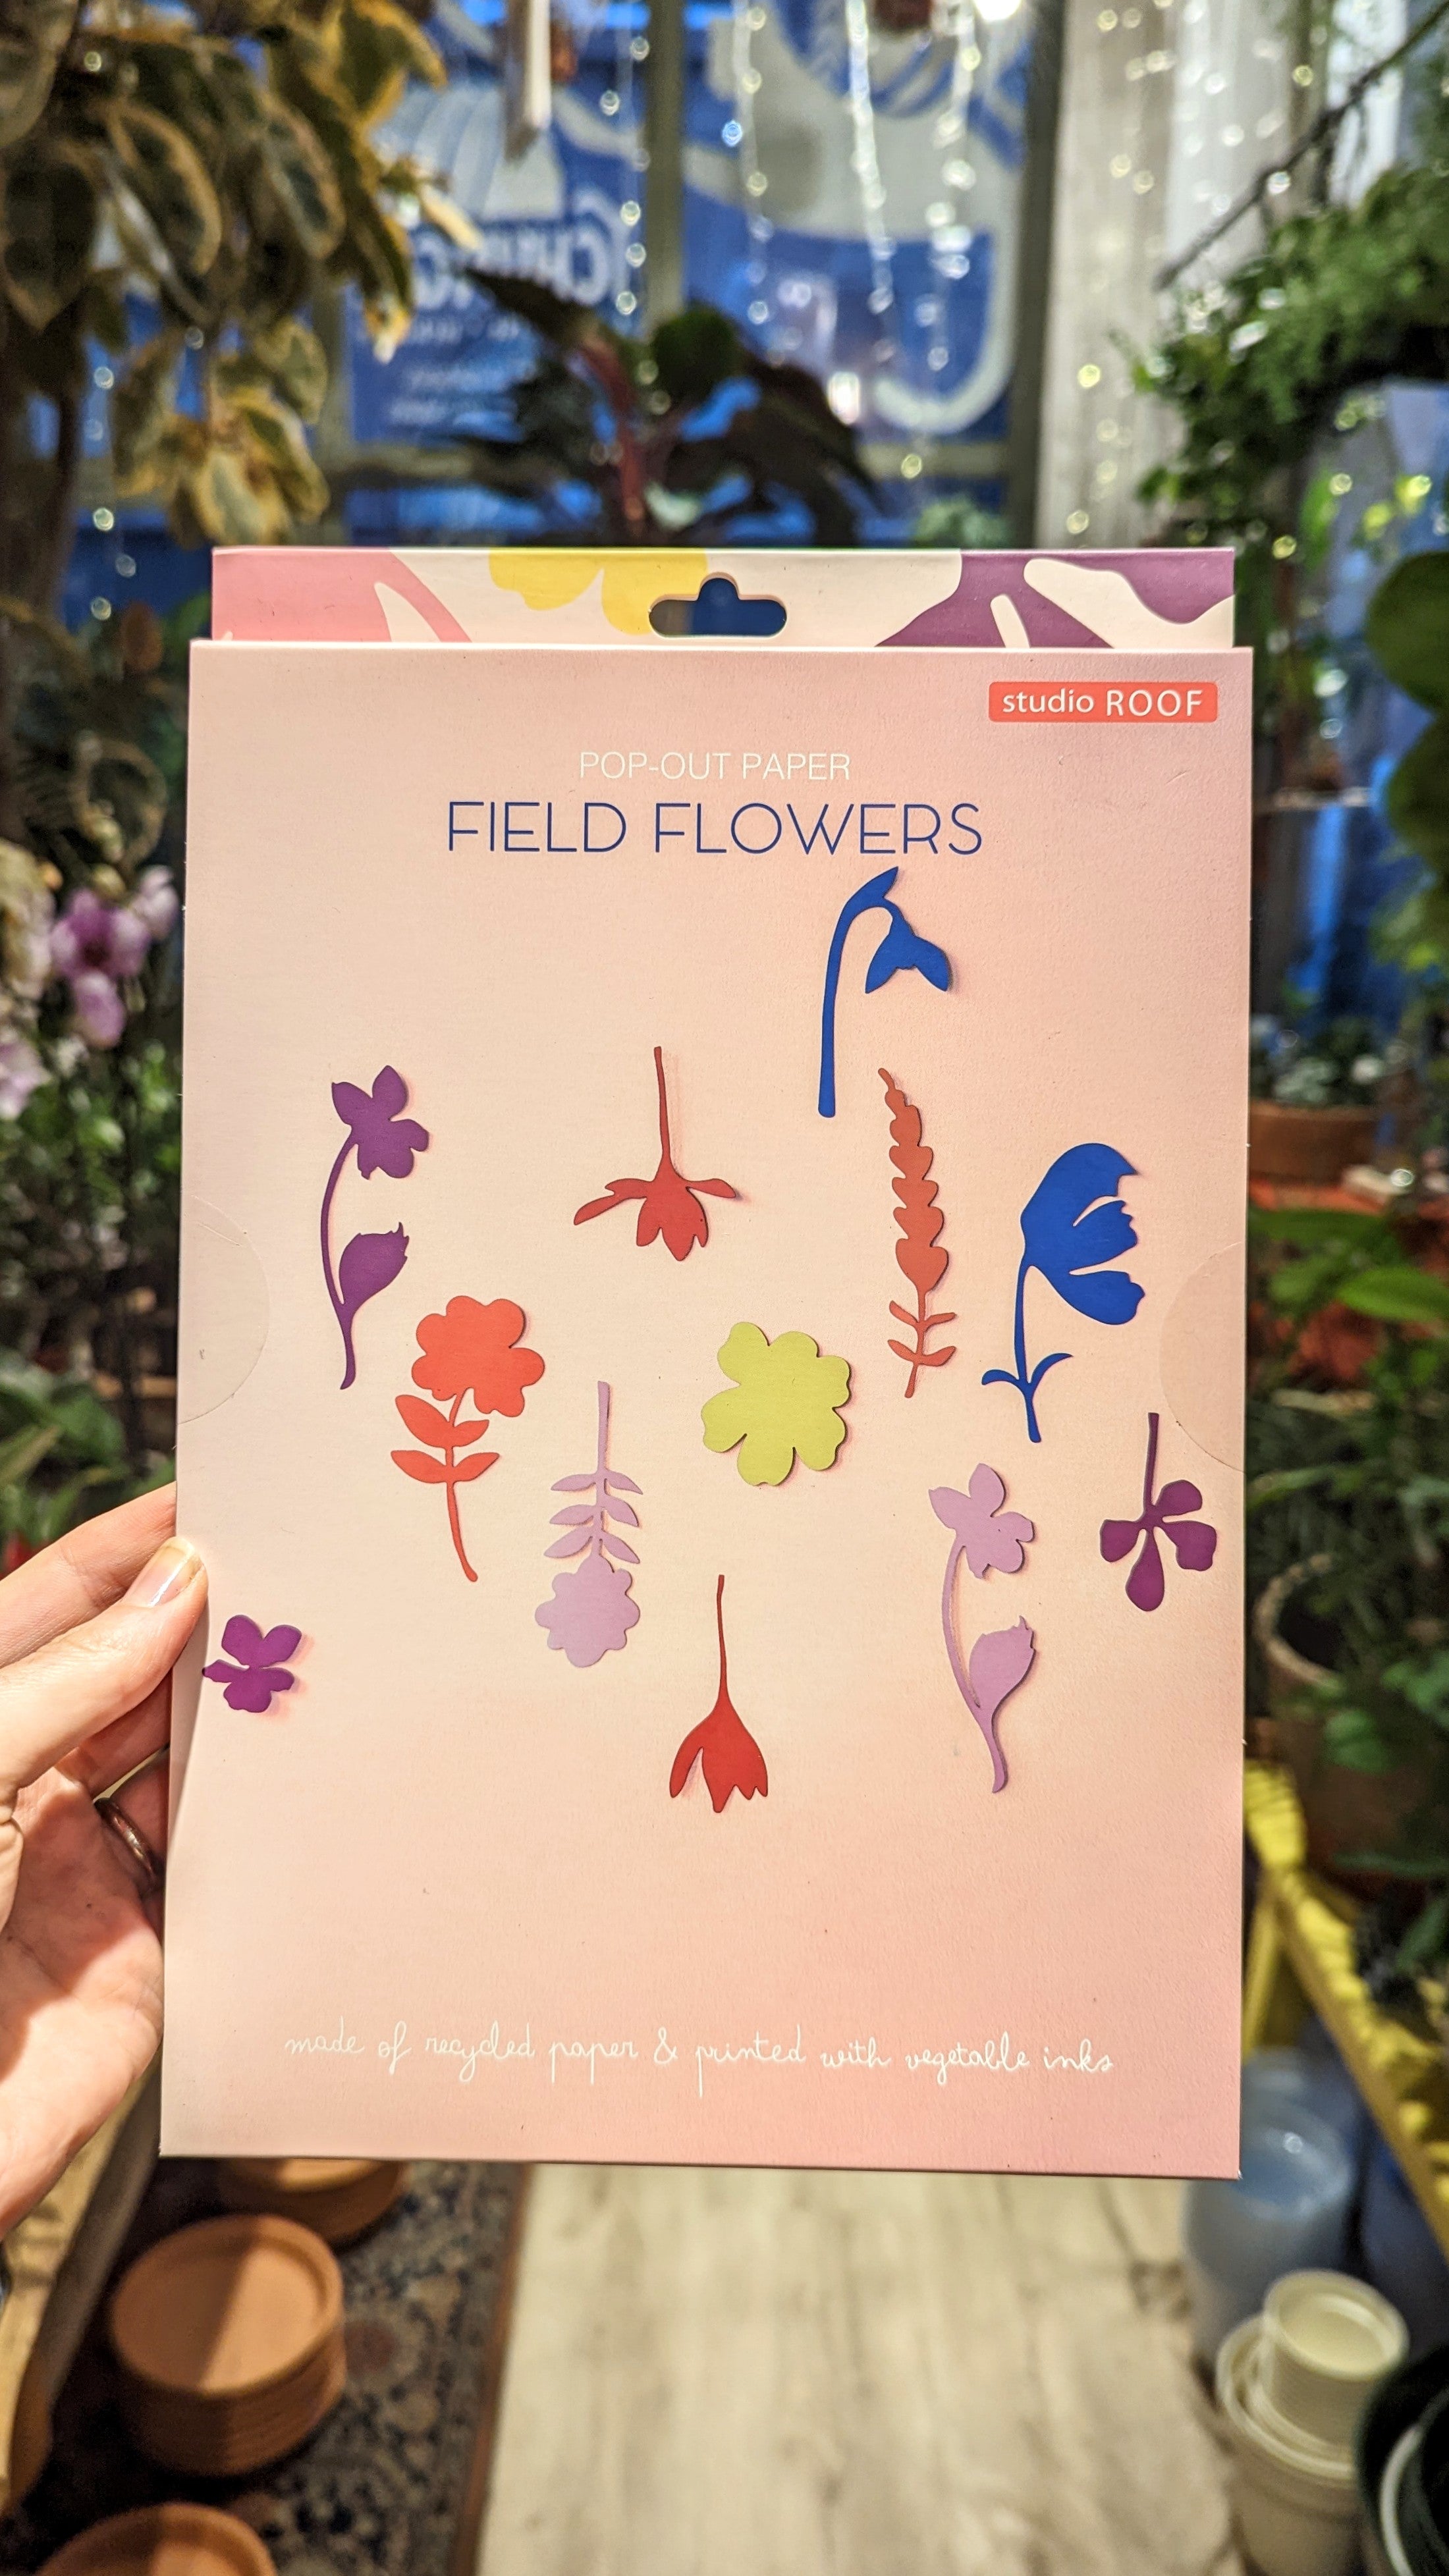 Le monde des fleurs sauvages (Field flowers) | Studio ROOF